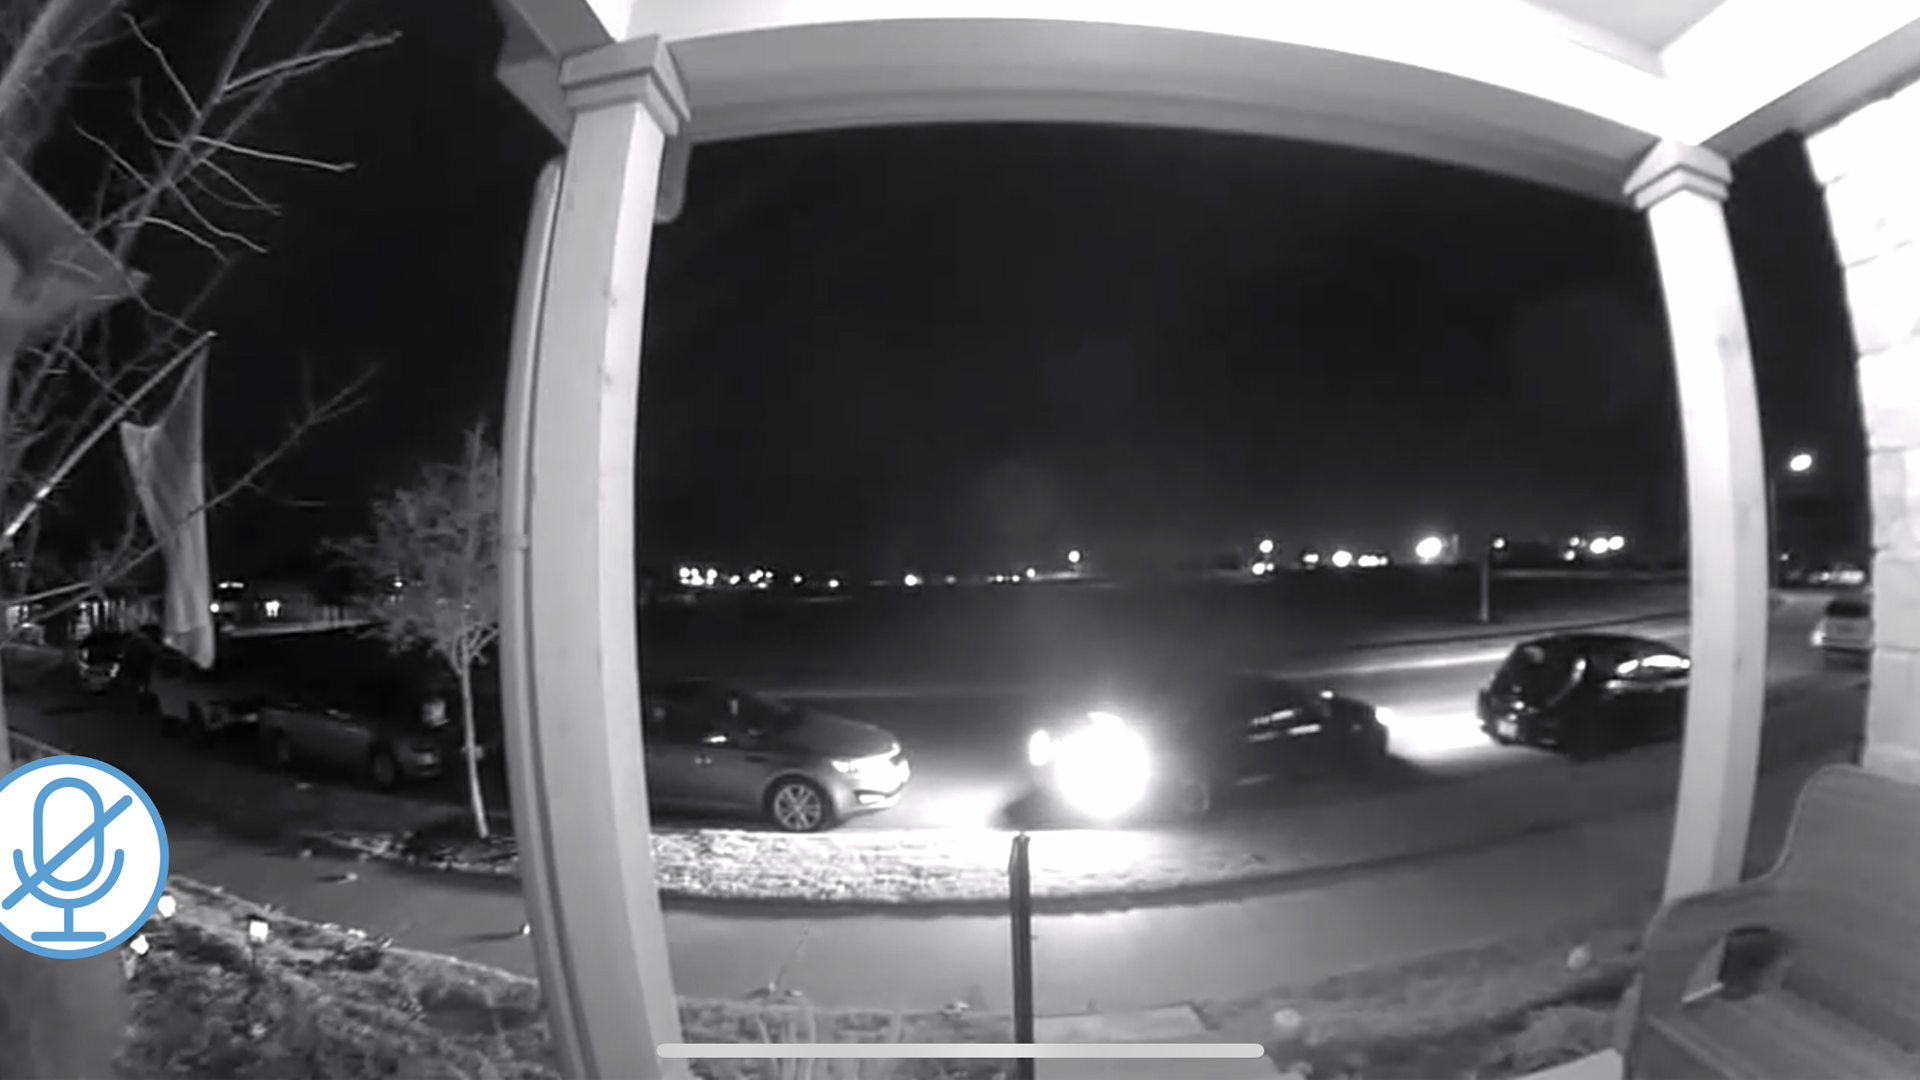 Blink Video Doorbell'in gece görüş modunda arabaları izlemek